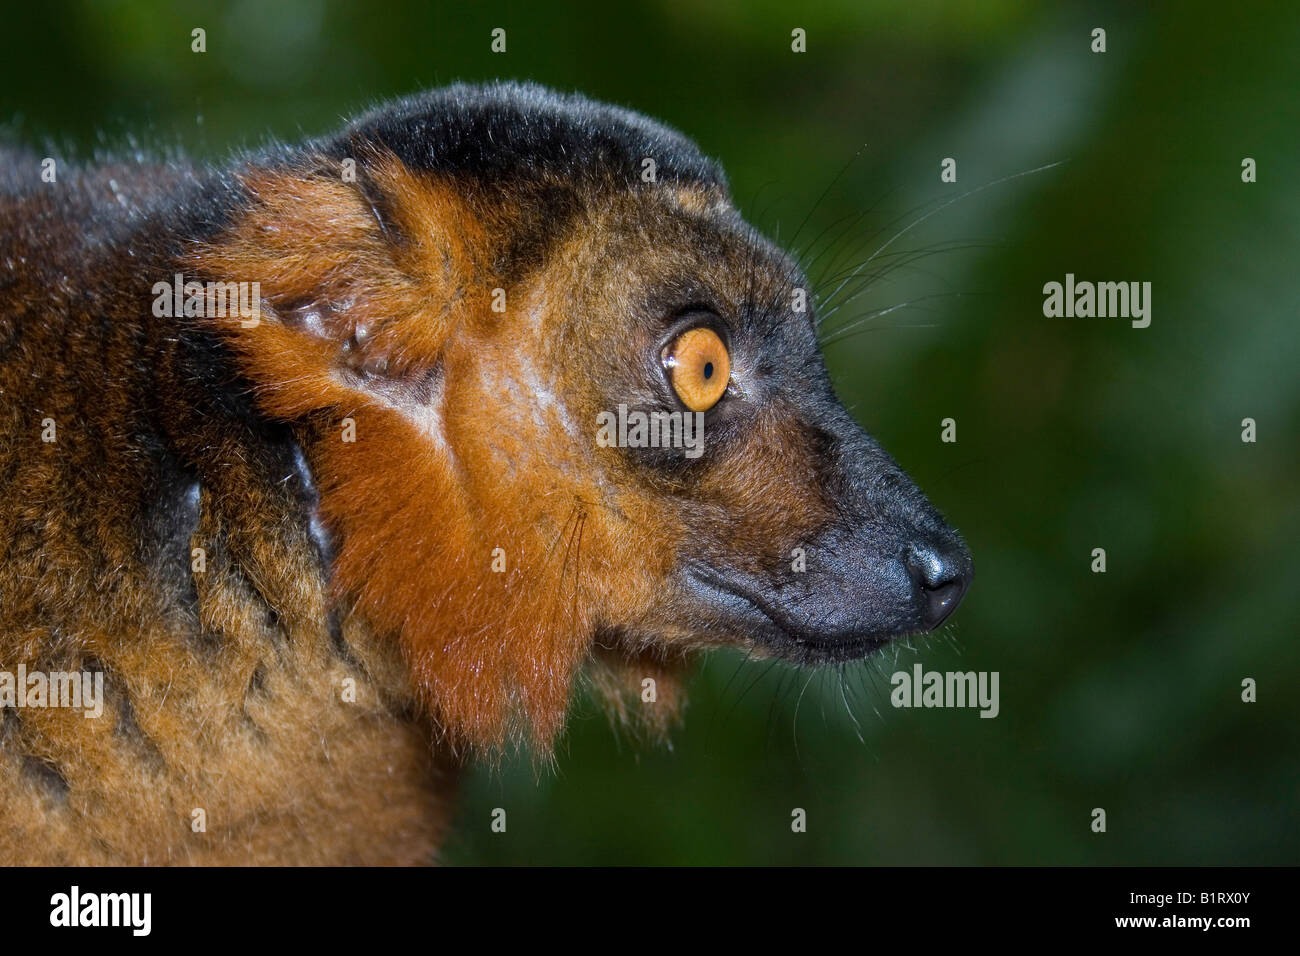 Croisement entre un lémurien noir (Eulemur macaco) et l'Eulemur coronatus (Lemur couronné), Madagascar, Afrique Banque D'Images